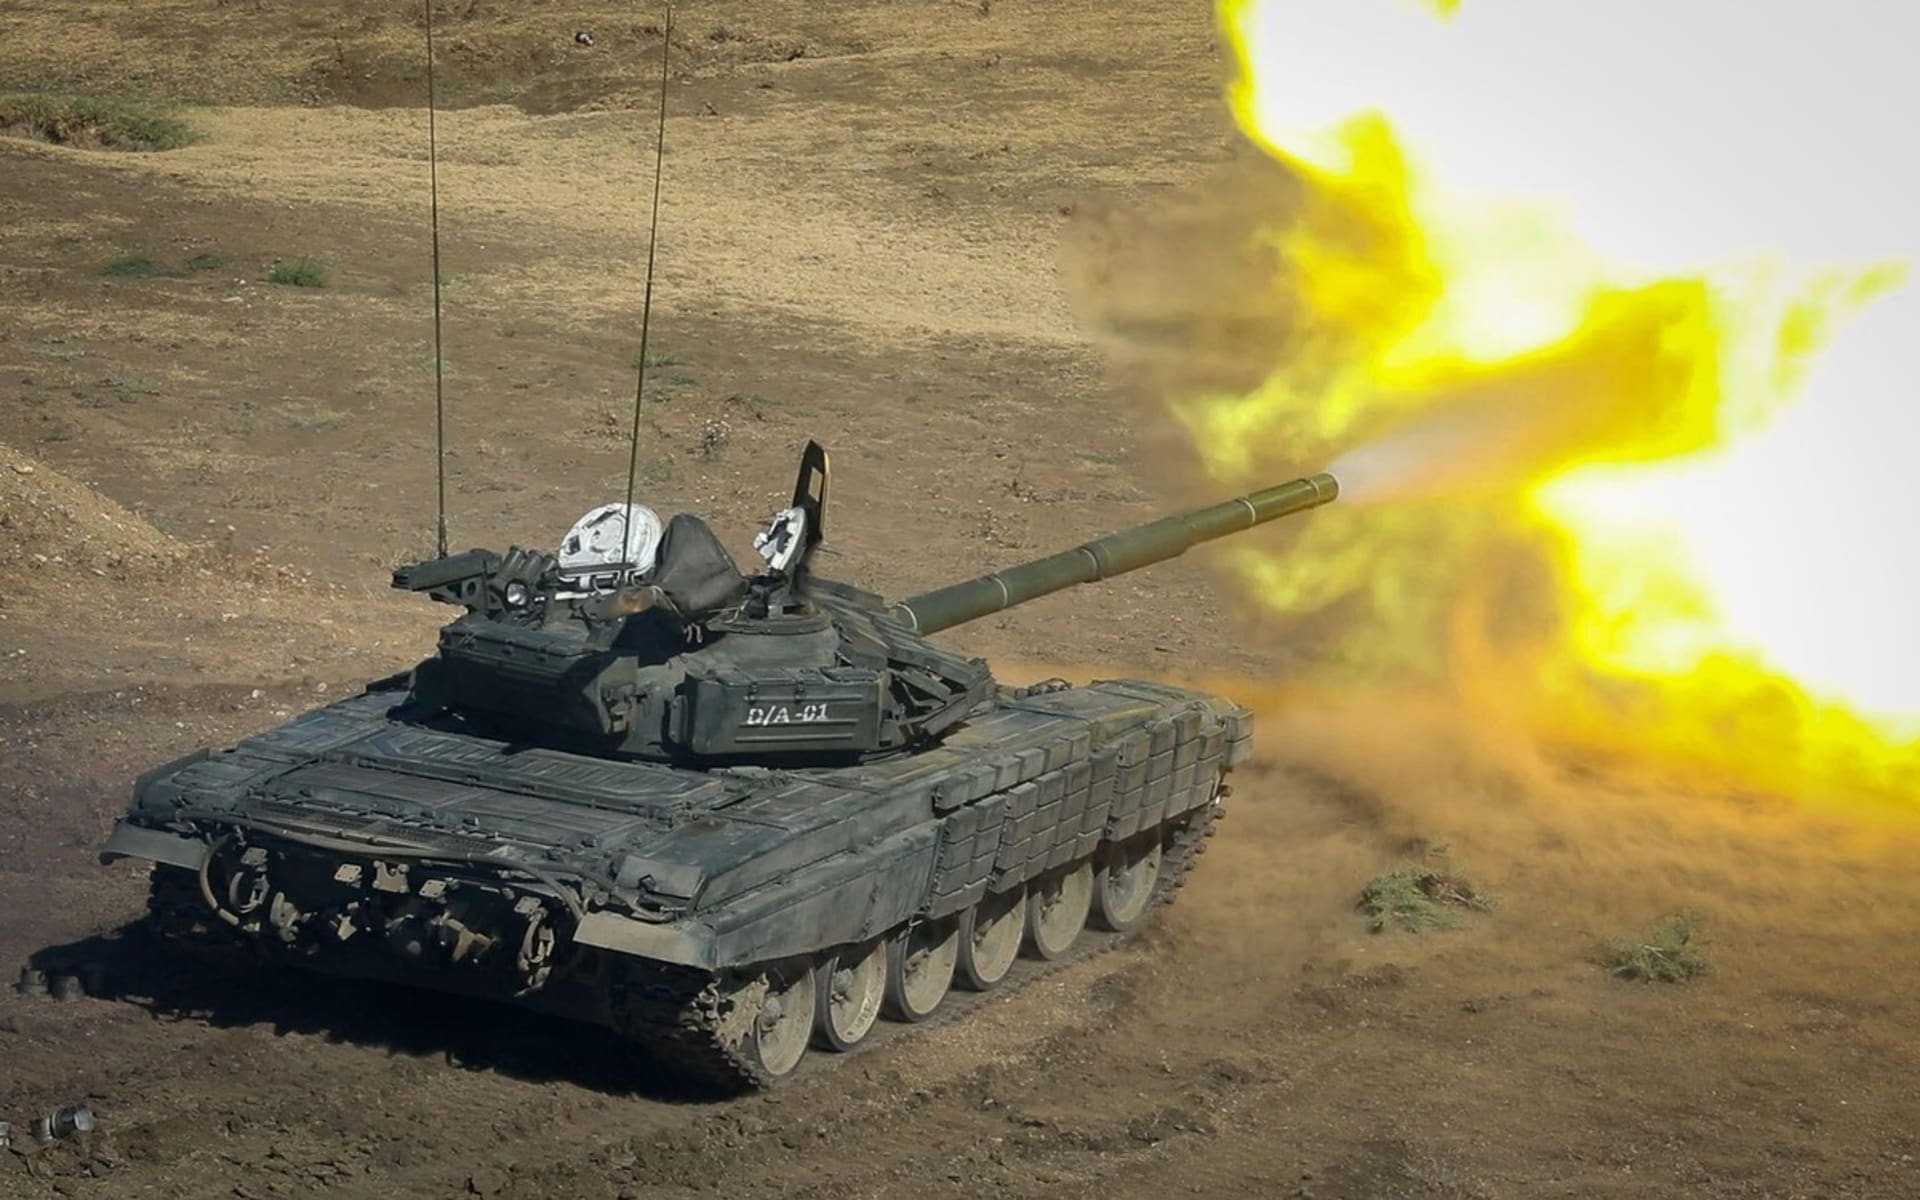 Tank T-72 ve službách gruzínské armády